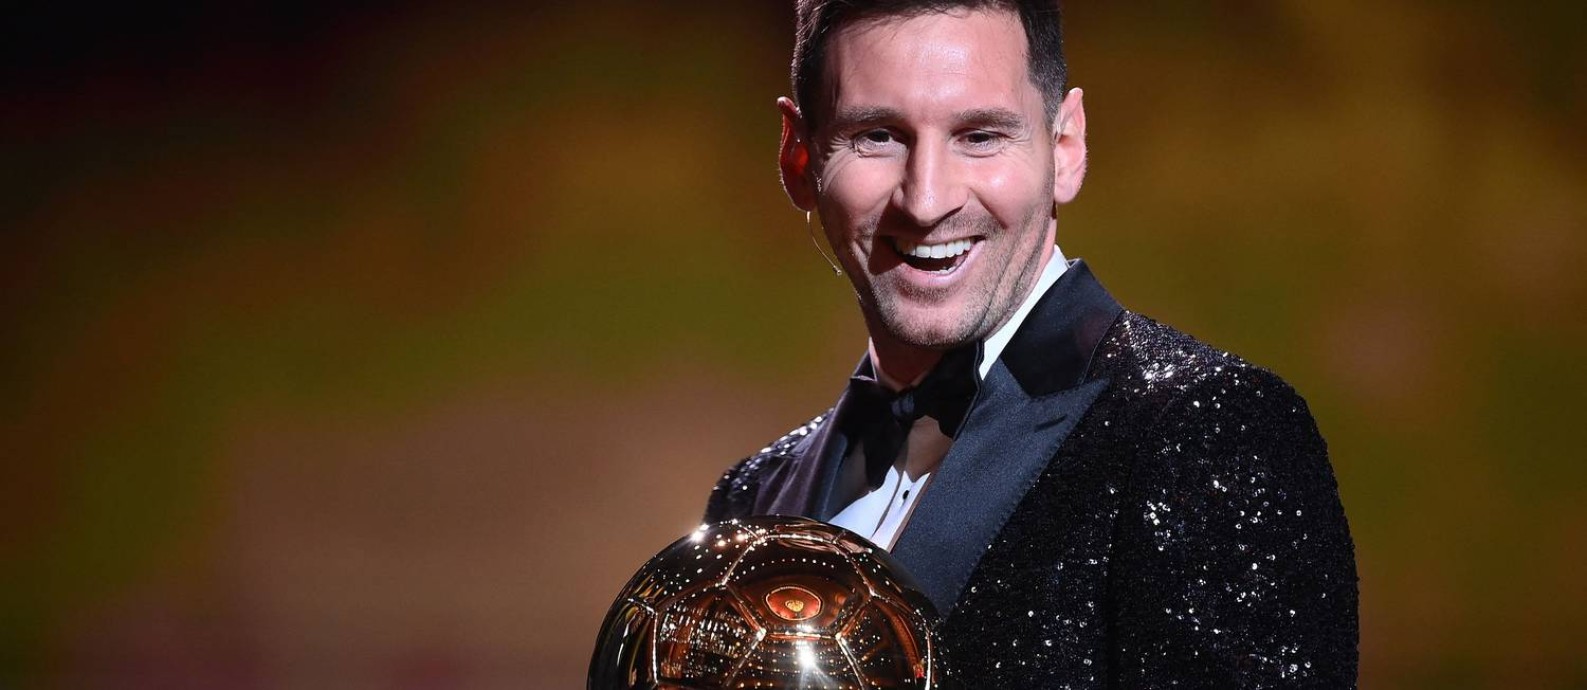 Messi recebe a sétima Bola de Ouro na carreira Foto: FRANCK FIFE / AFP